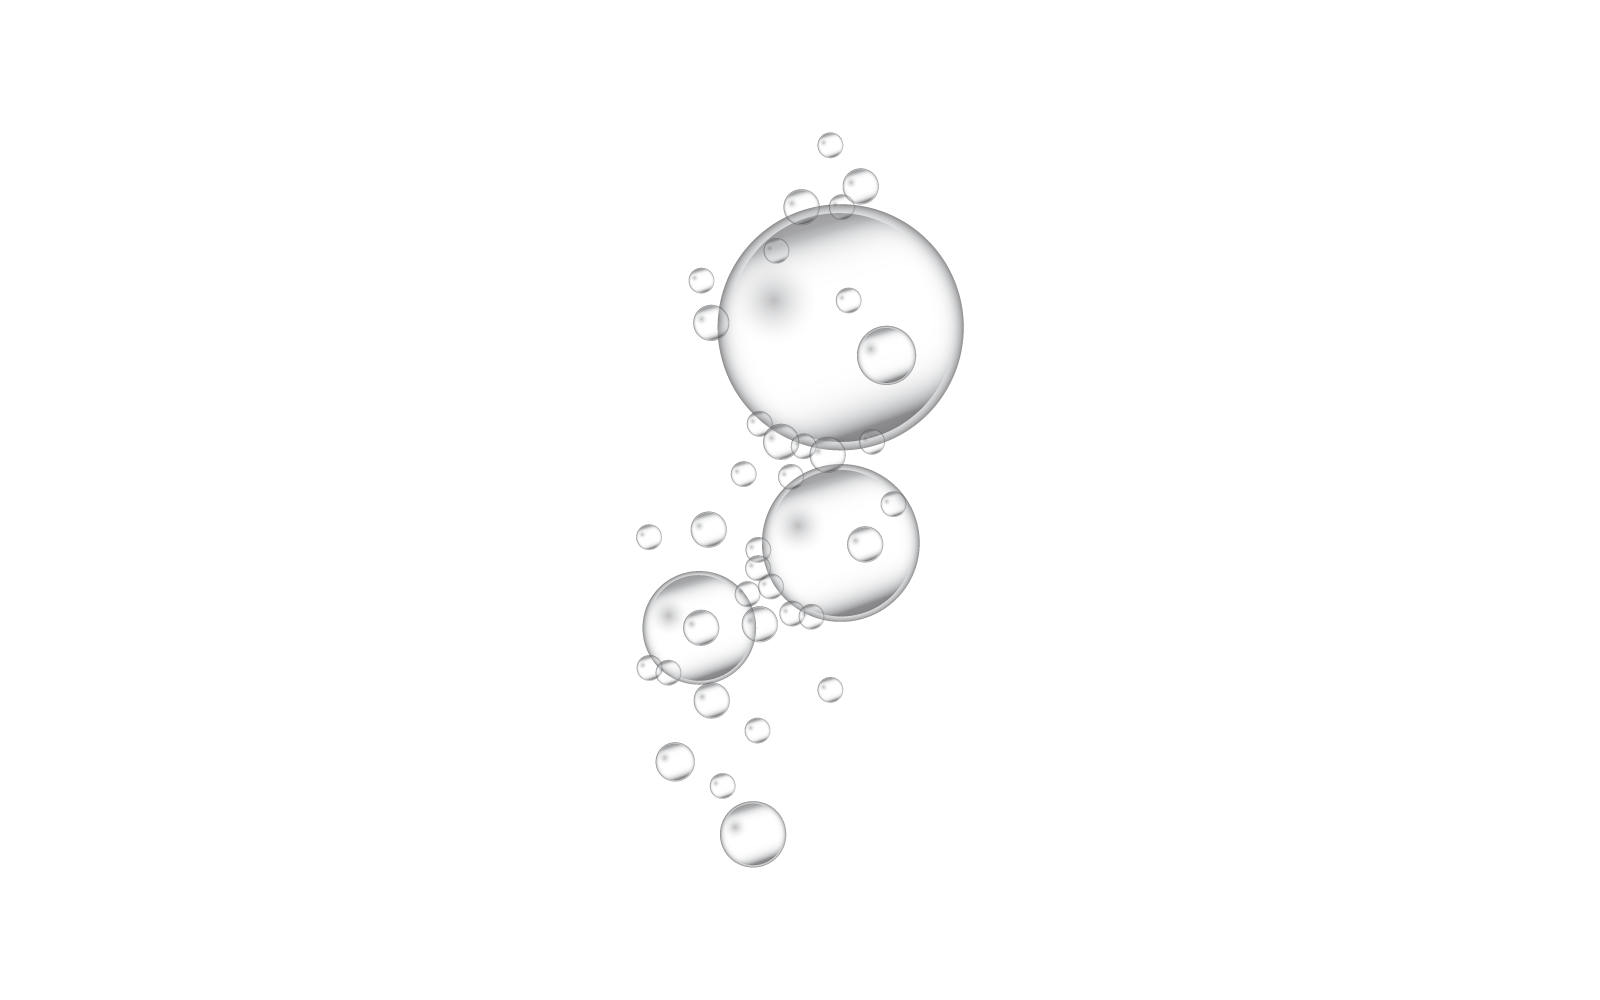 Modello naturale realistico dell'icona di disegno dell'illustrazione della bolla